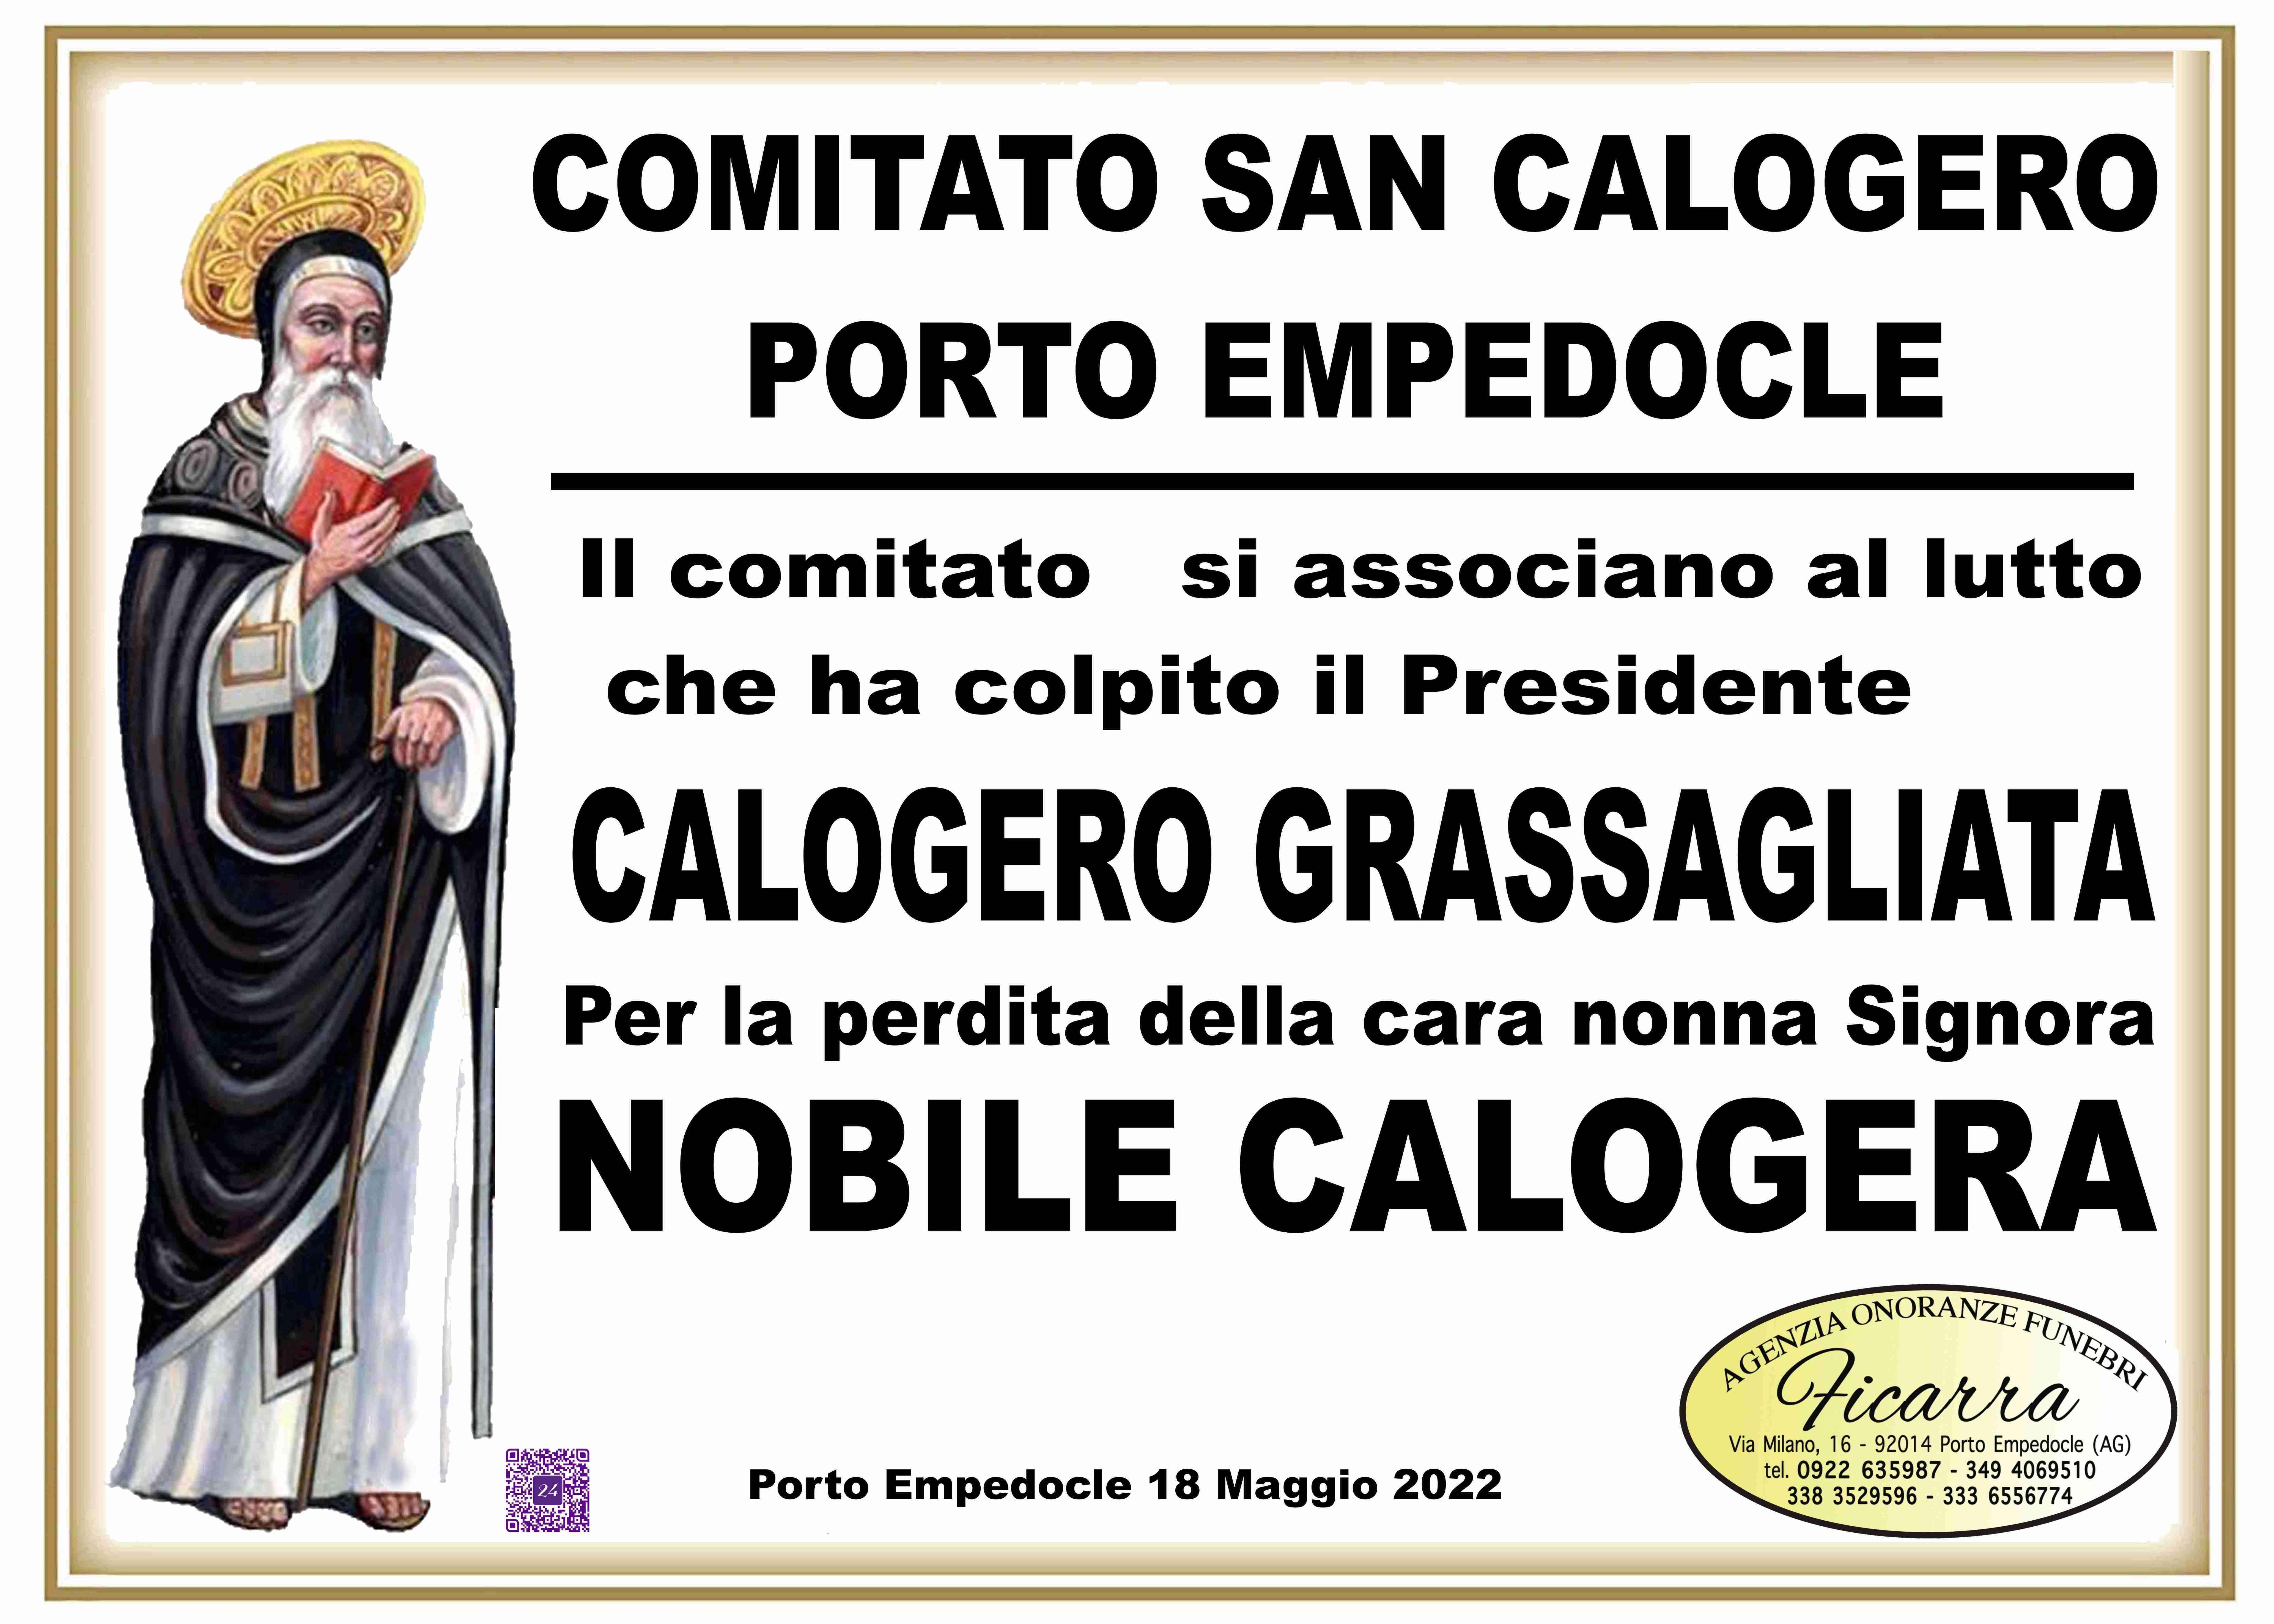 Calogera Nobile